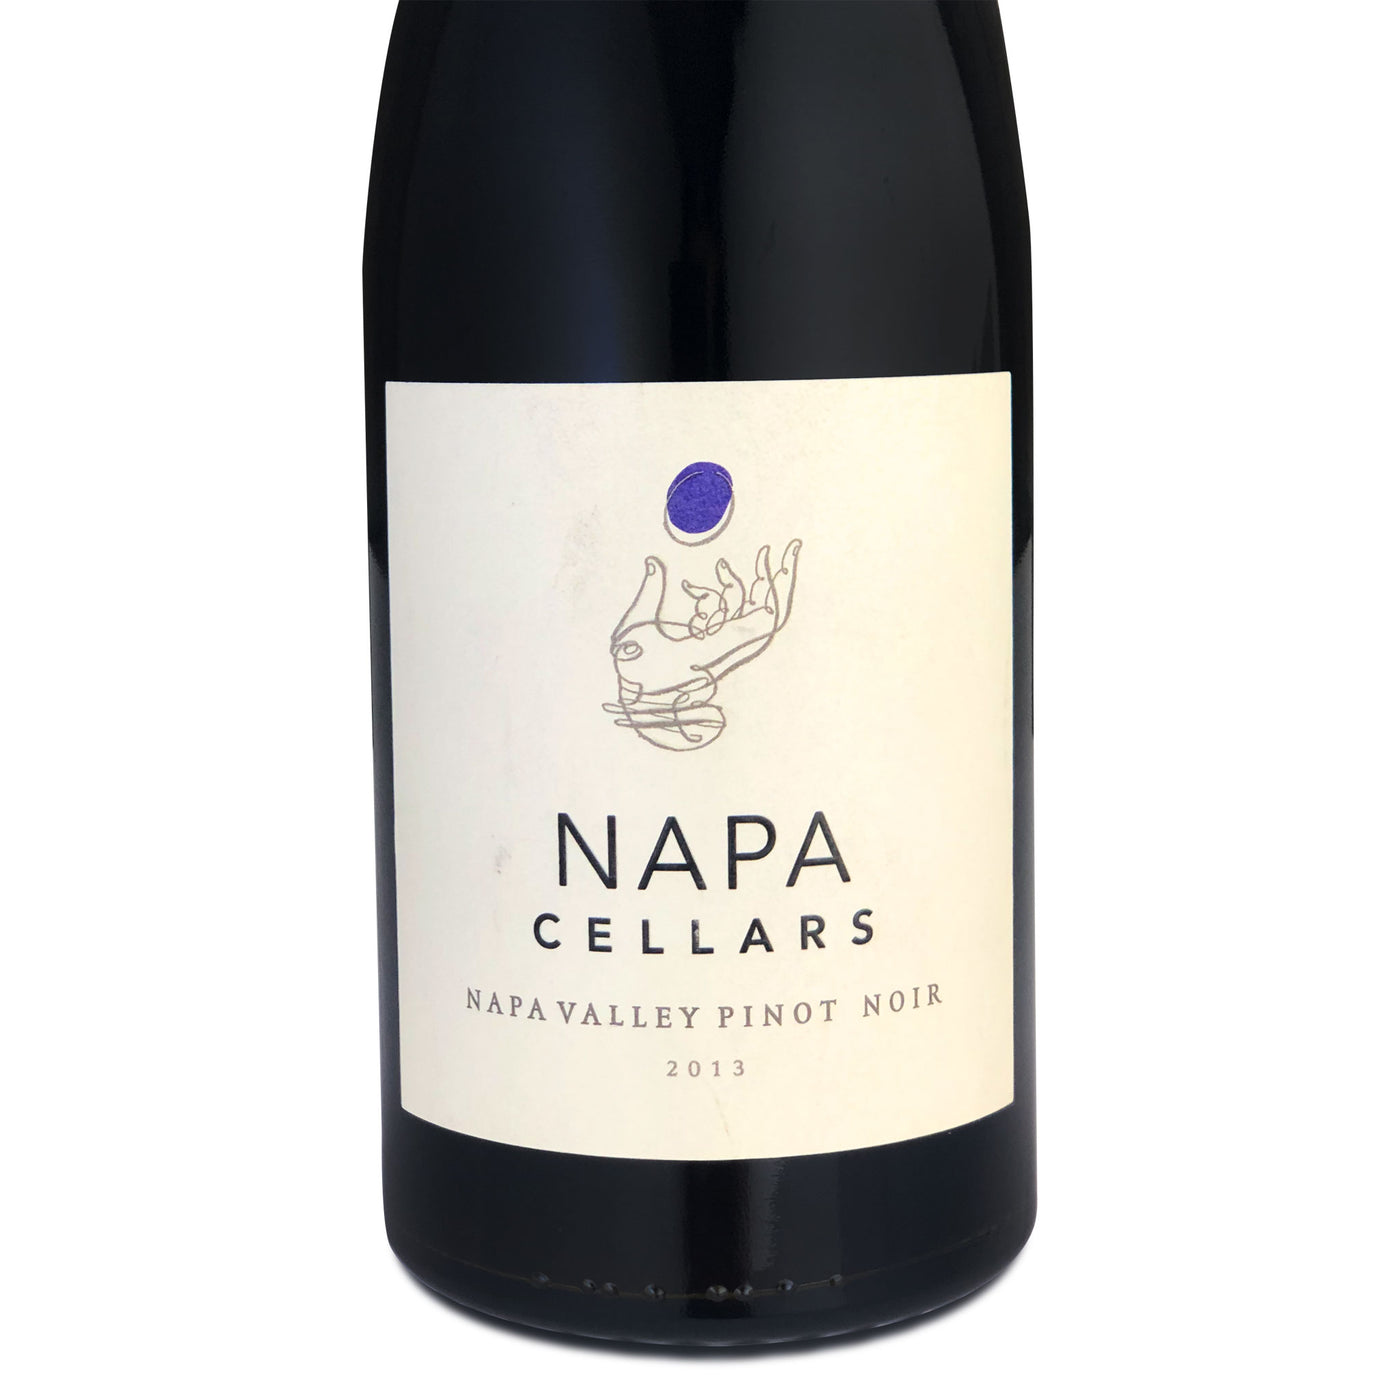 Napa Cellars Pinot Noir 2013